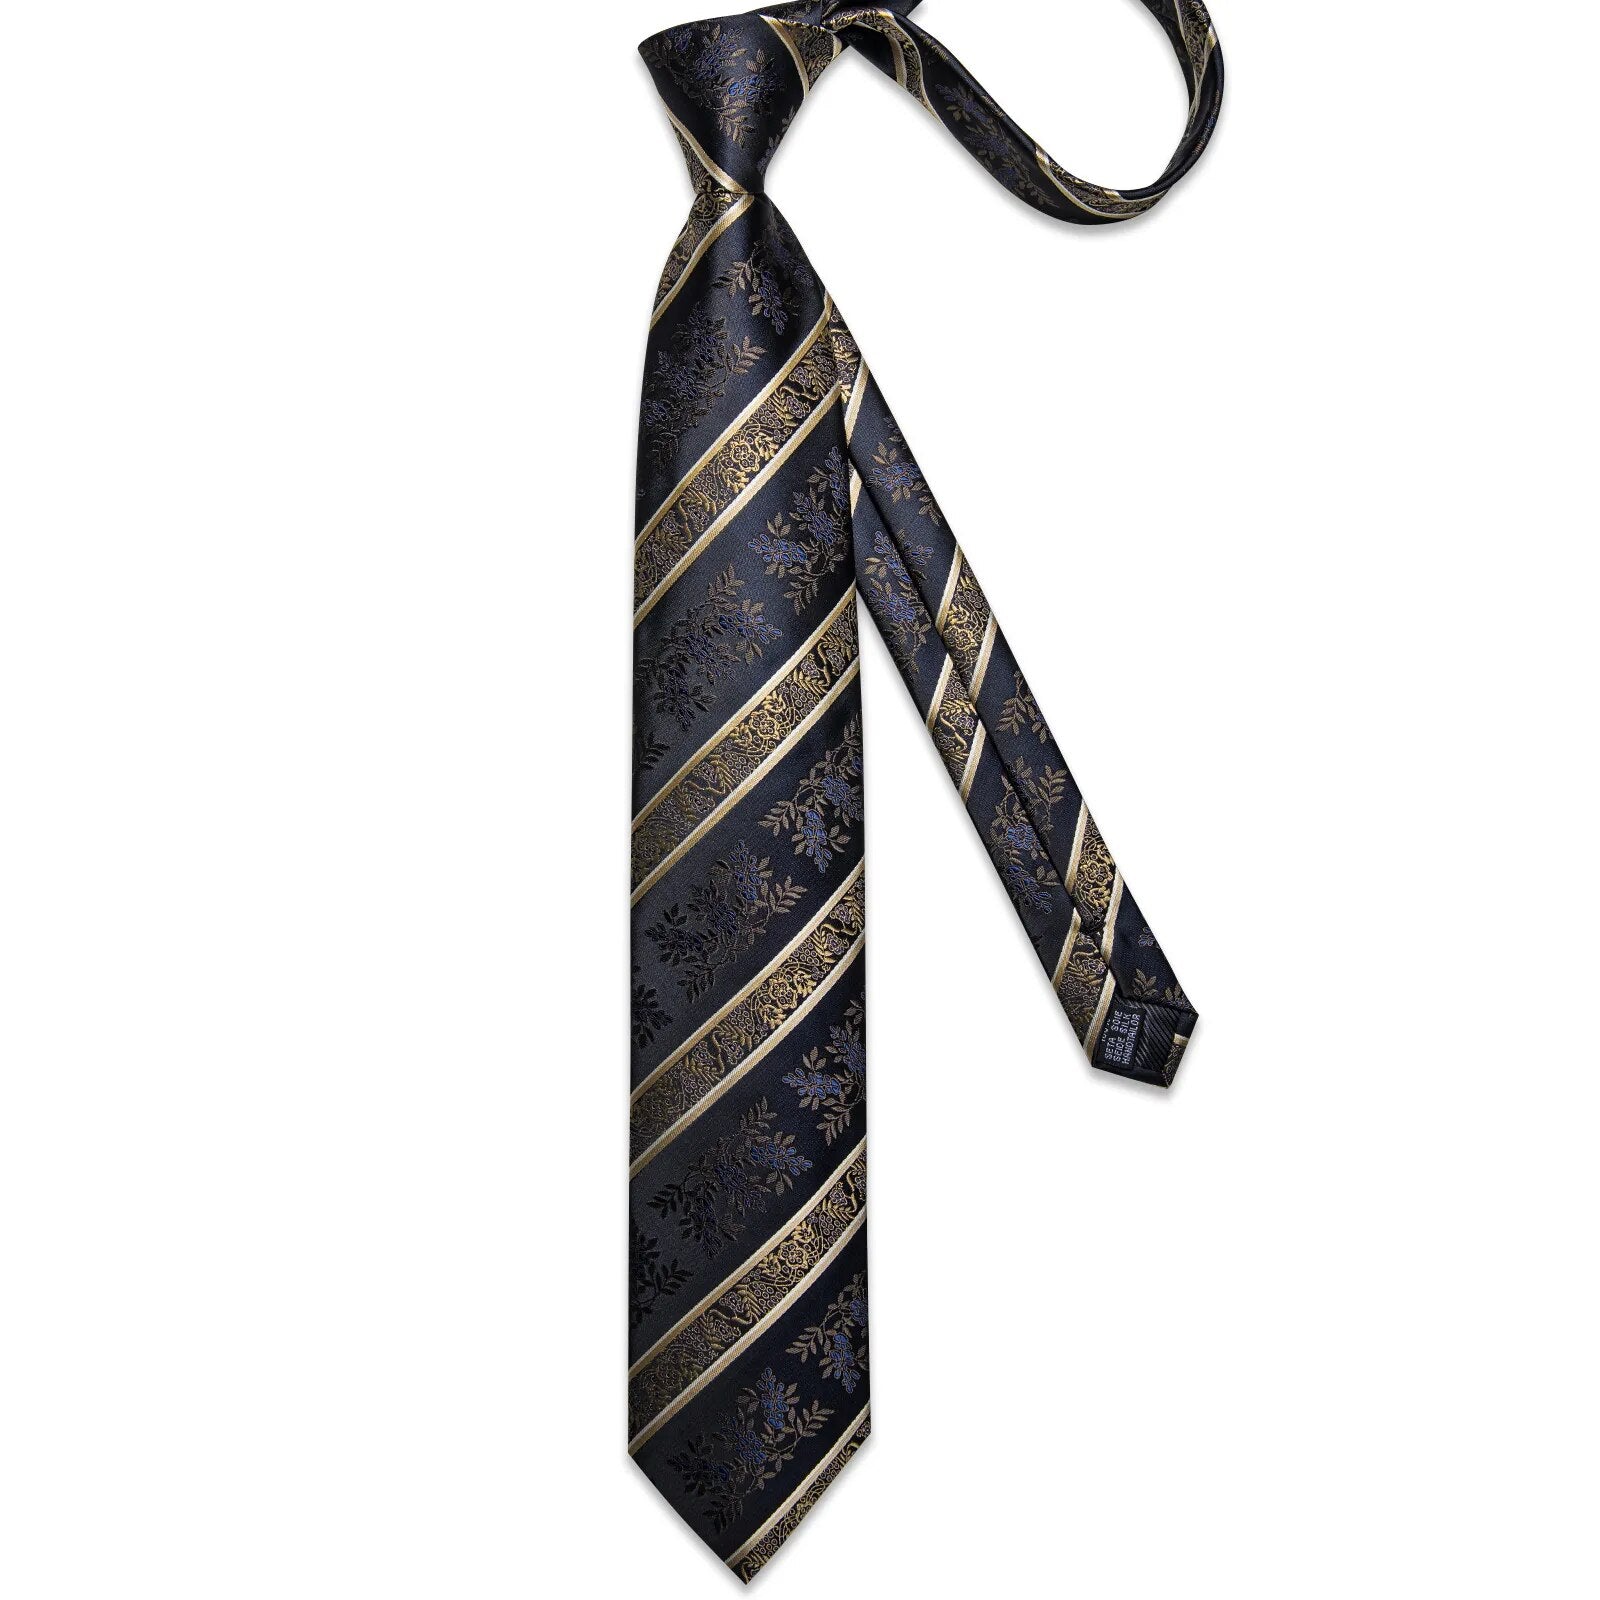 Men's Tie Set with Clip Luxury Retro Striped Floral 8cm Necktie Handkerchief Cufflinks